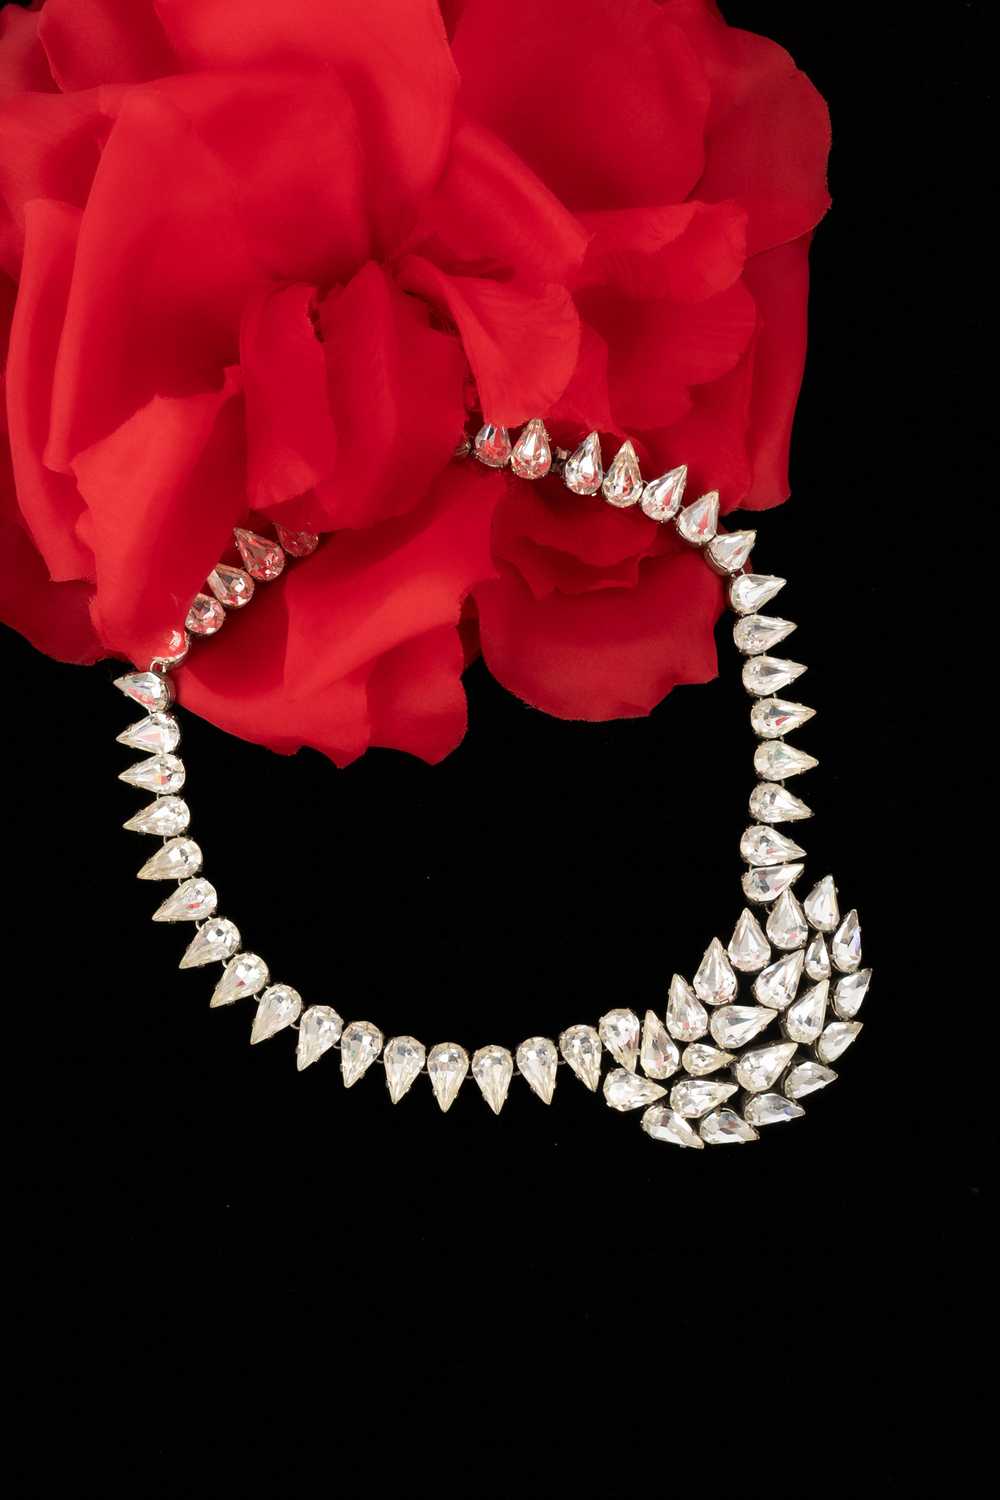 Viintage rhinestoned necklace - image 1